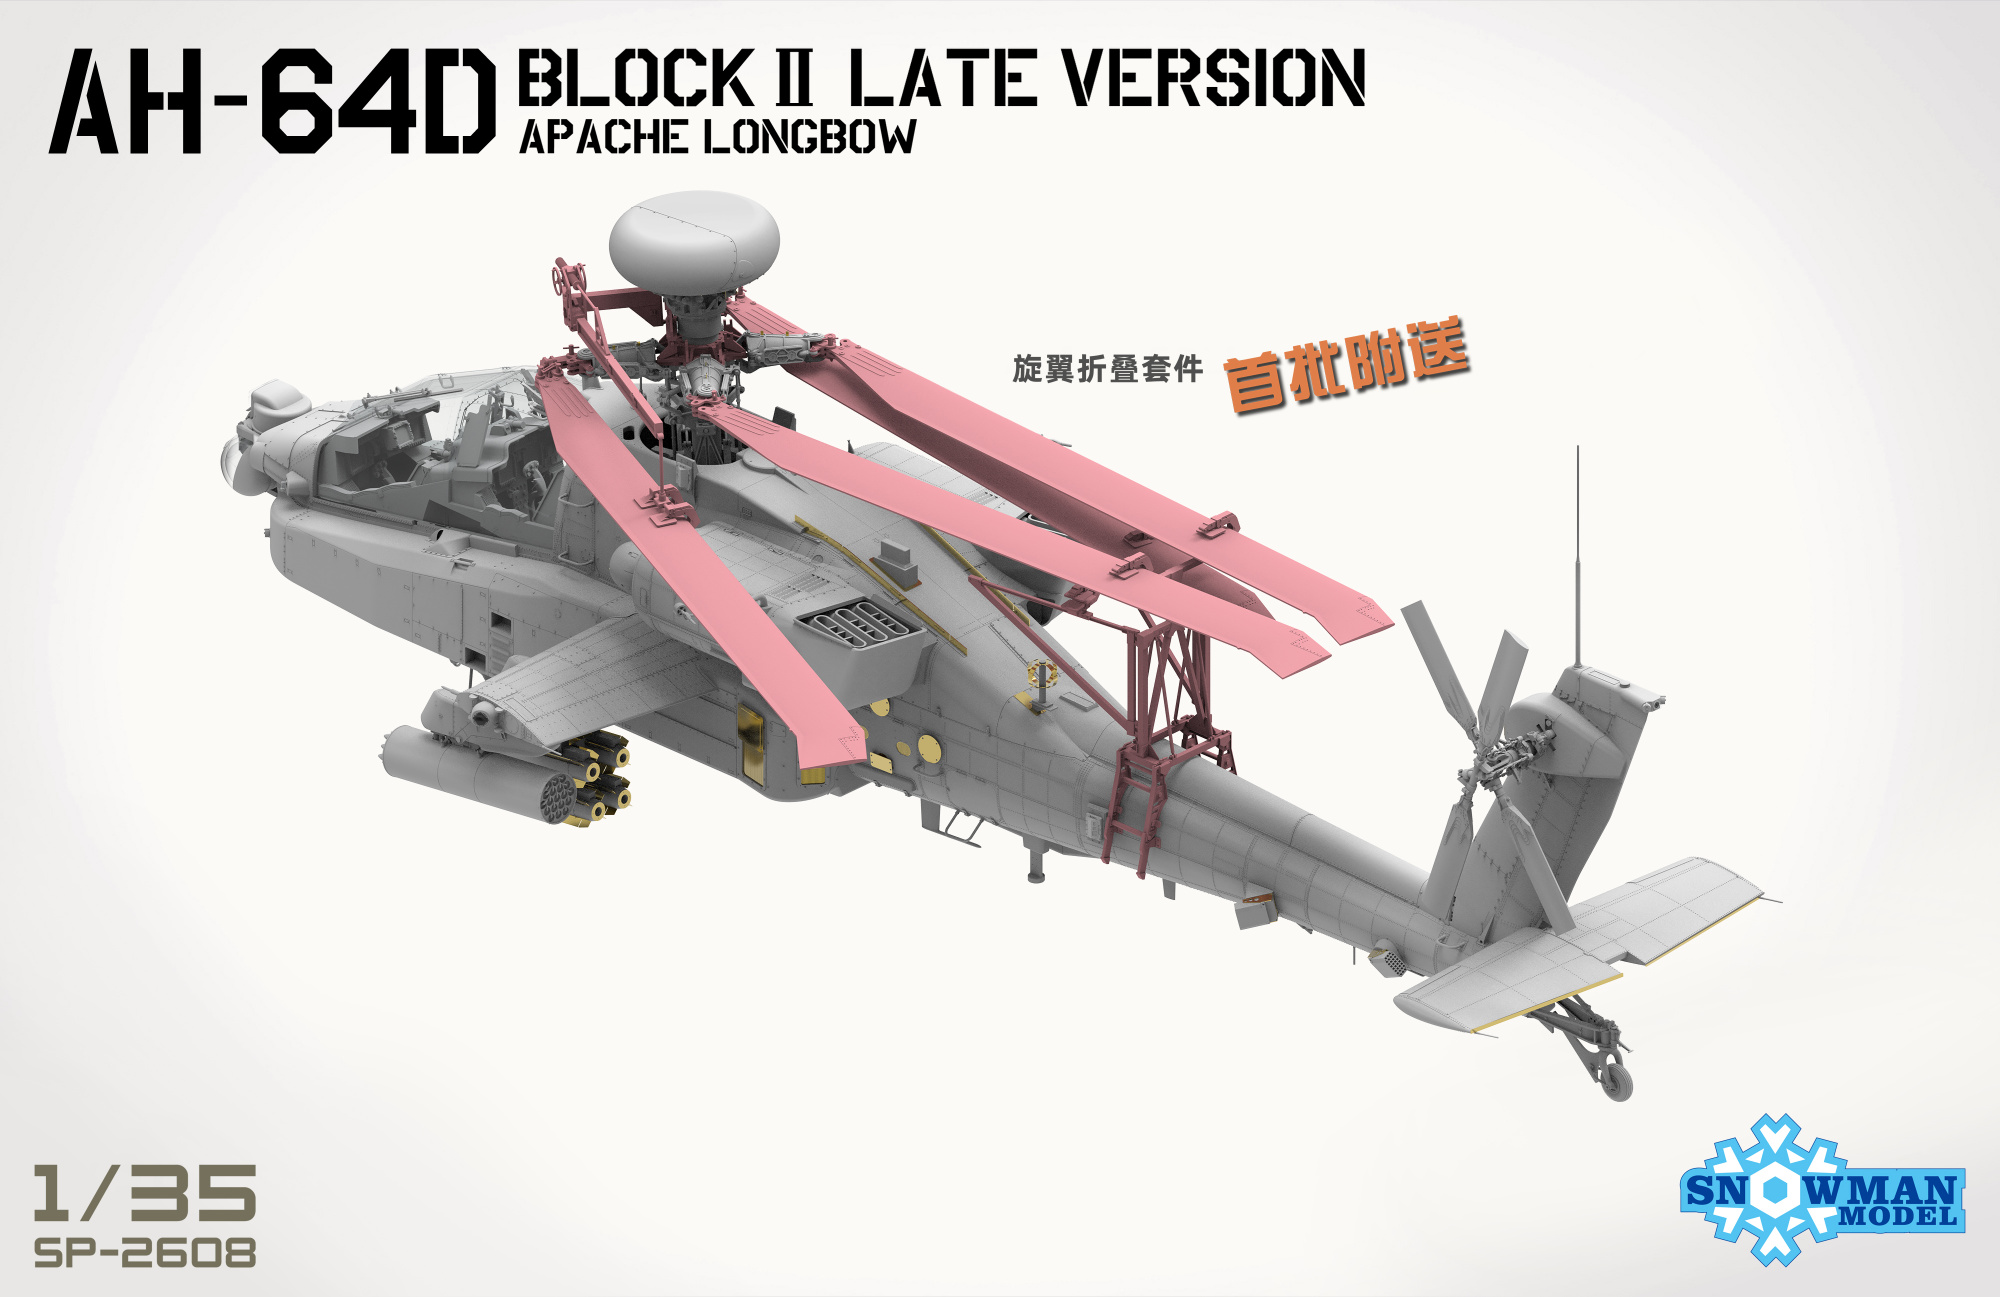 雪人模型新品(SP-2608)-1/35 波音AH-64D Block II长弓阿帕奇后期版_